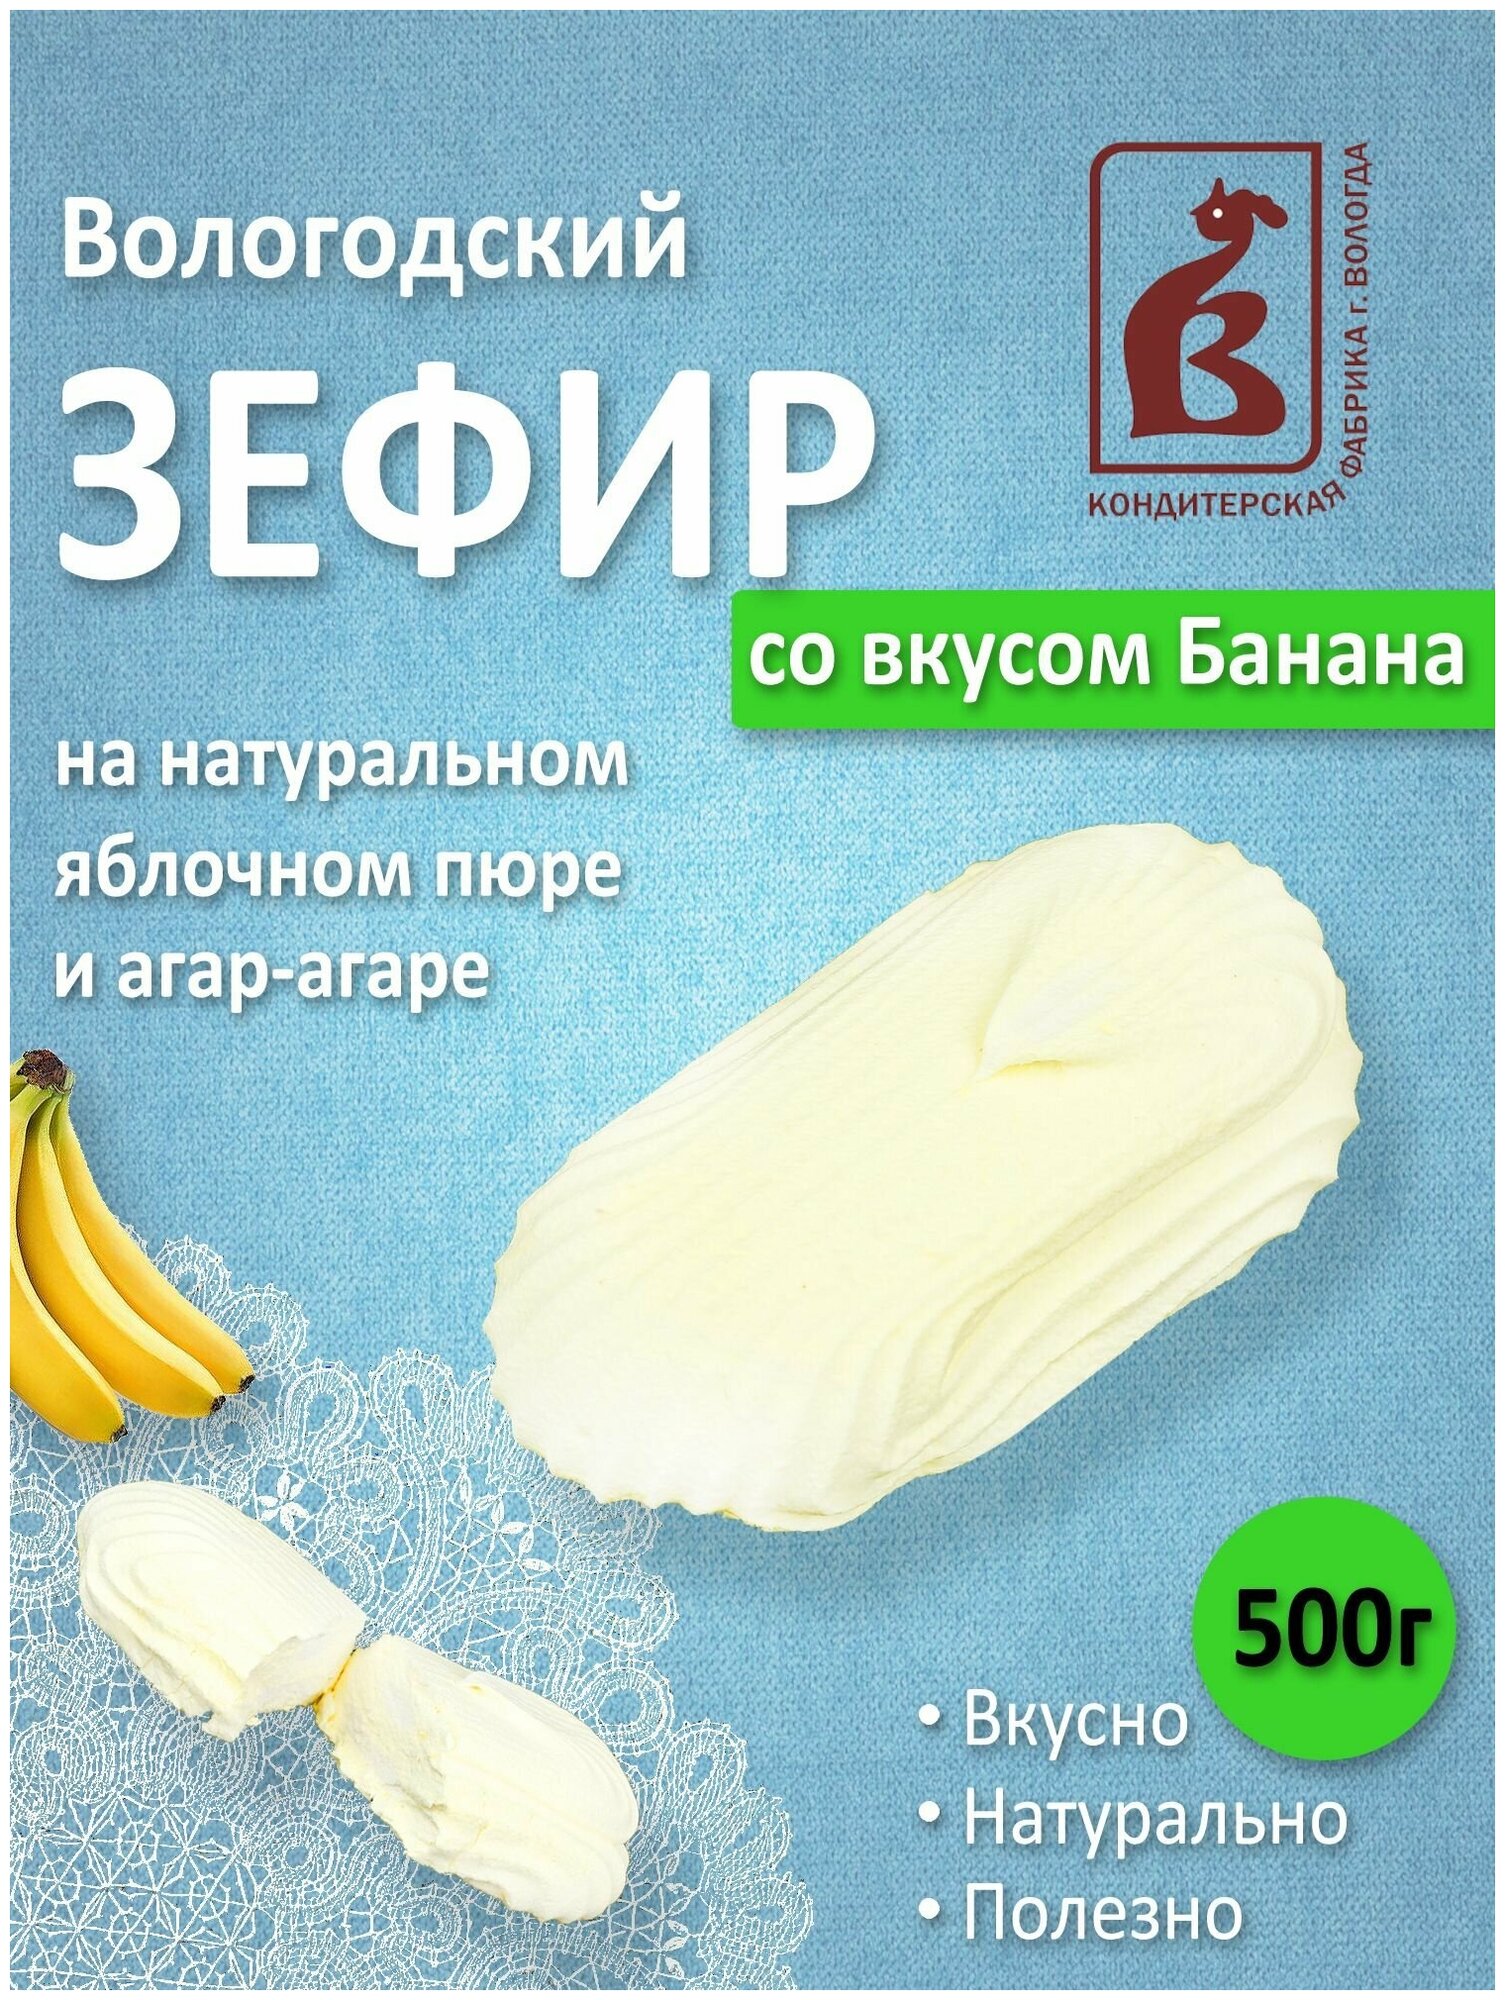 Зефир Вологодский со вкусом Банана 500гр.